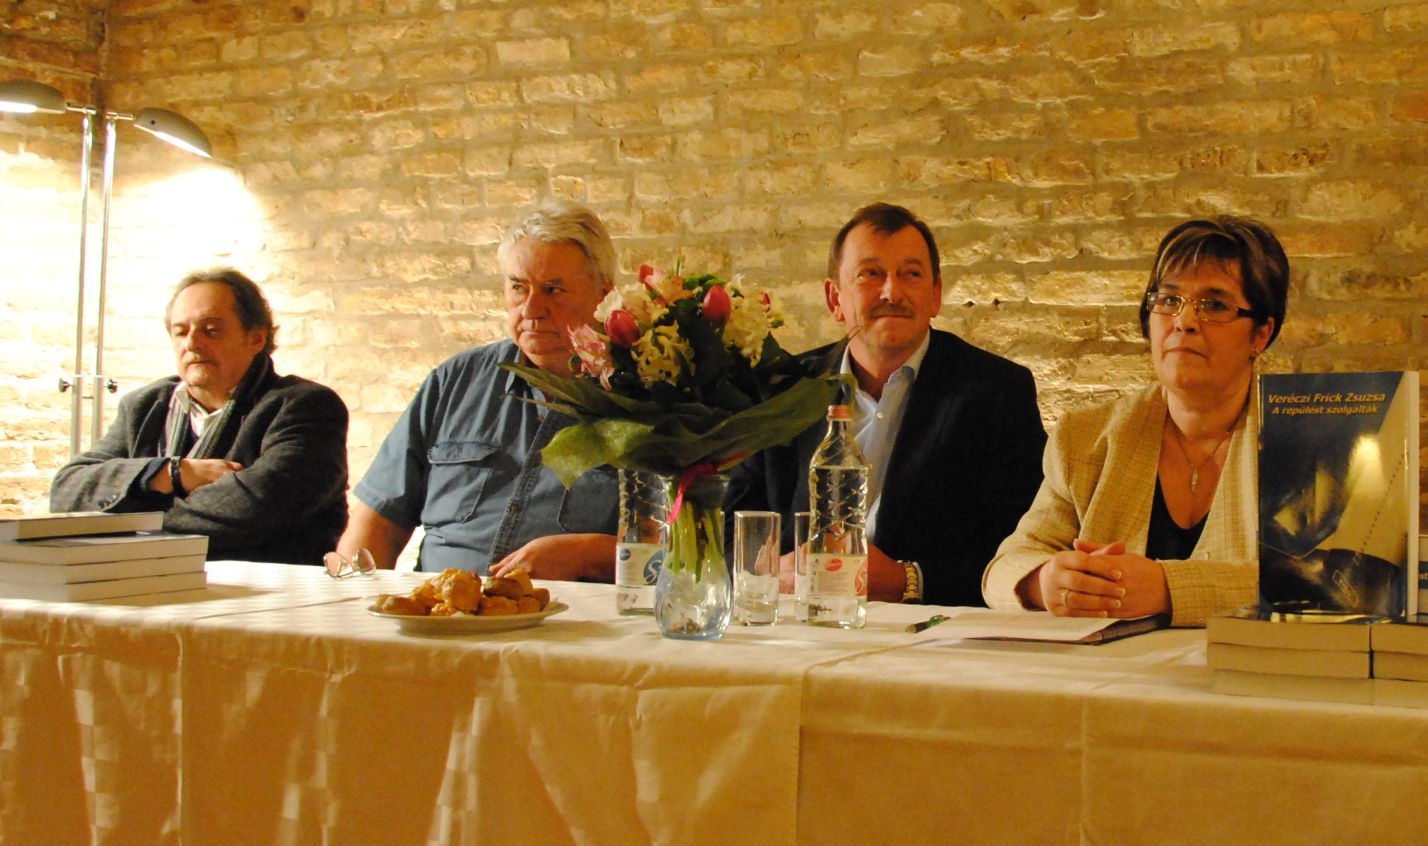 Balról jobbra: Aczél Ferenc, Somogyvári József, Kovács Ferenc, Veréczi Zsuzsa <br>(fotók: Szikszay Sándor)